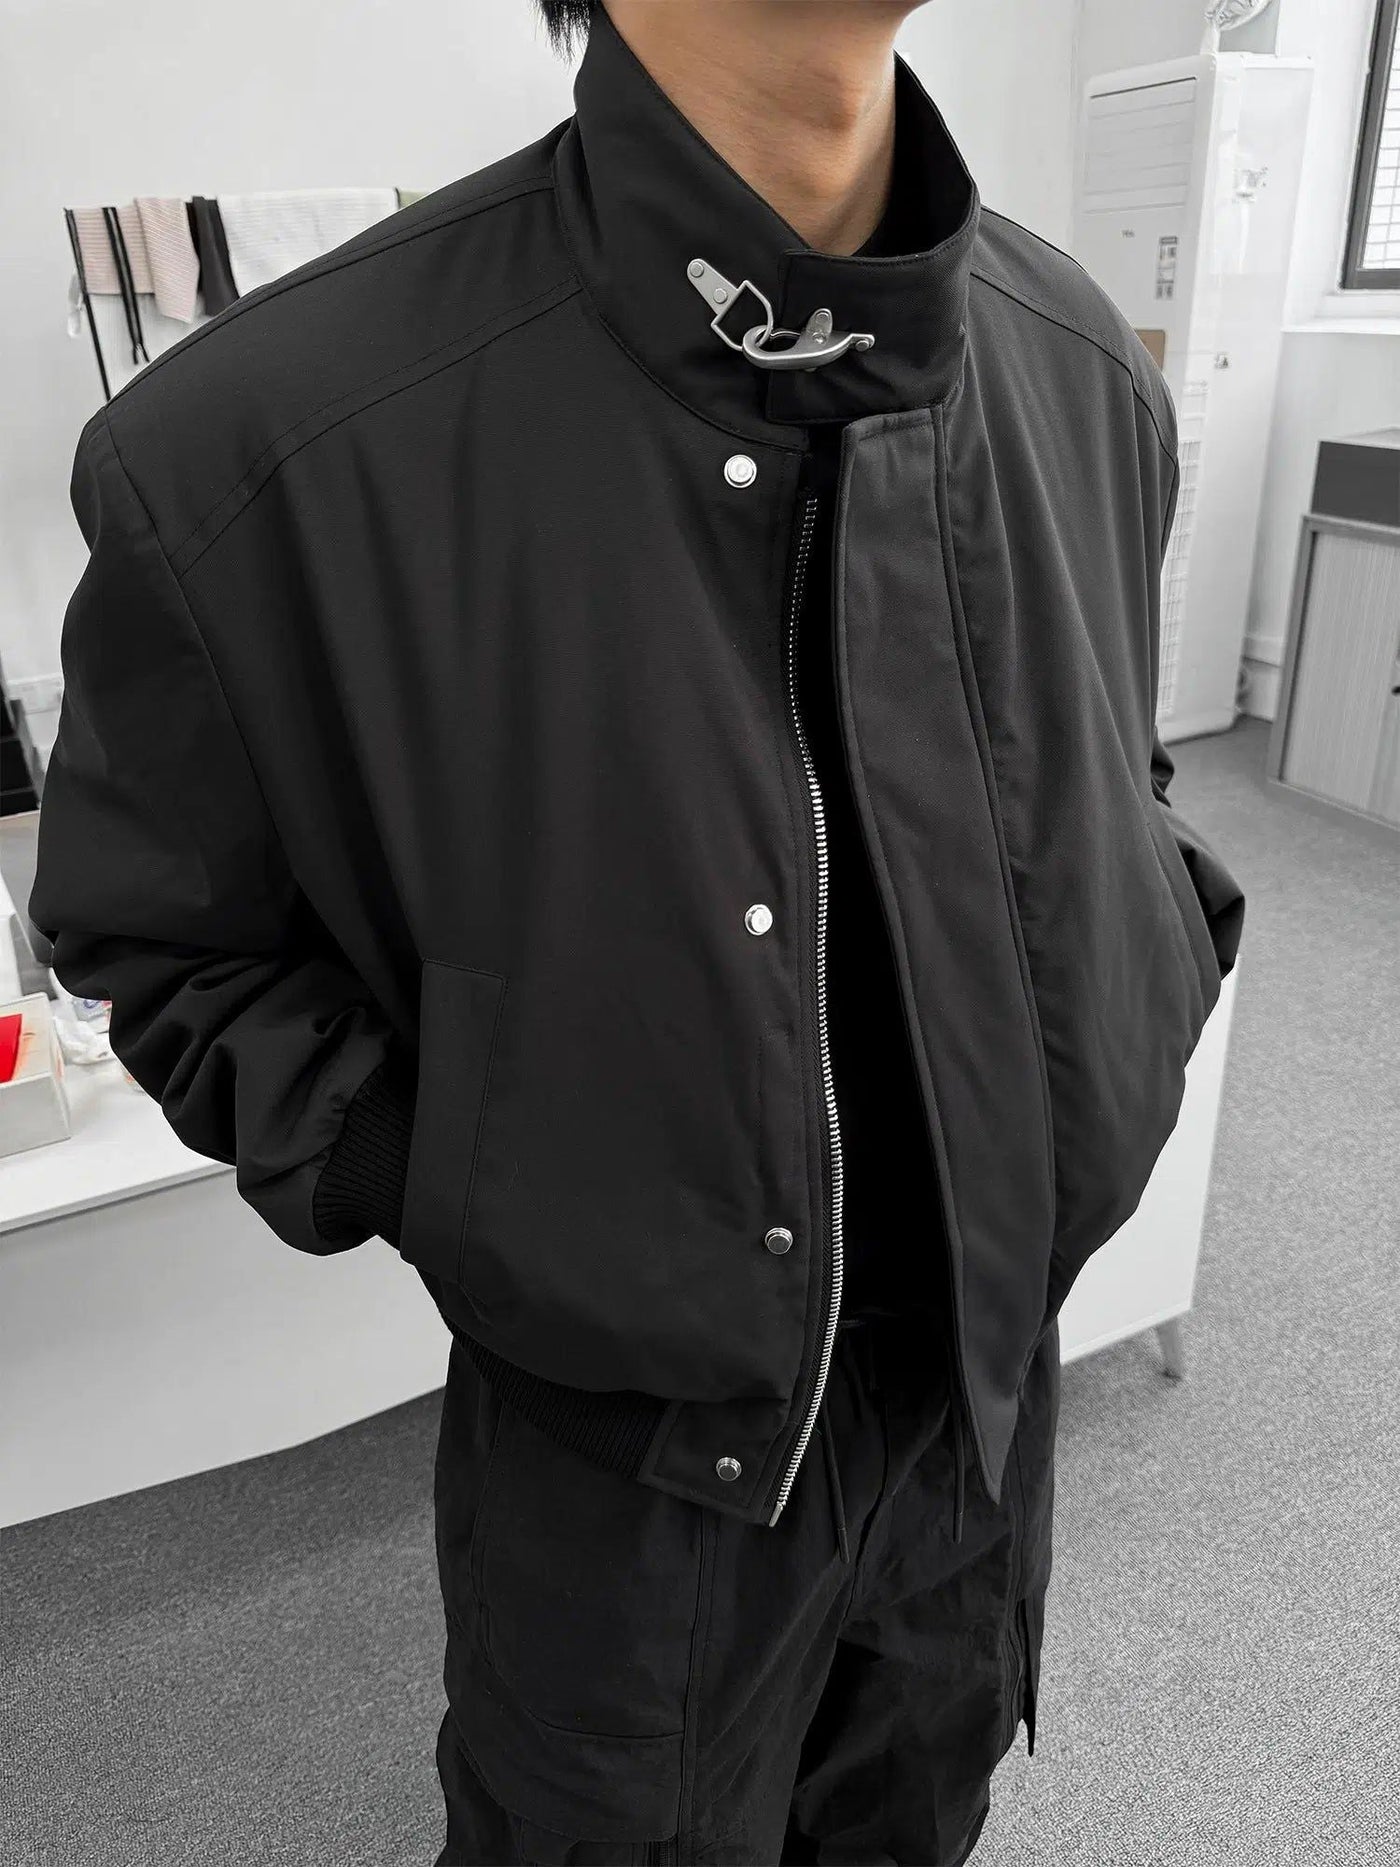 Side Pocket PU Leather Jacket Korean Street Fashion Jacket By Terra Incognita Shop Online at OH Vault